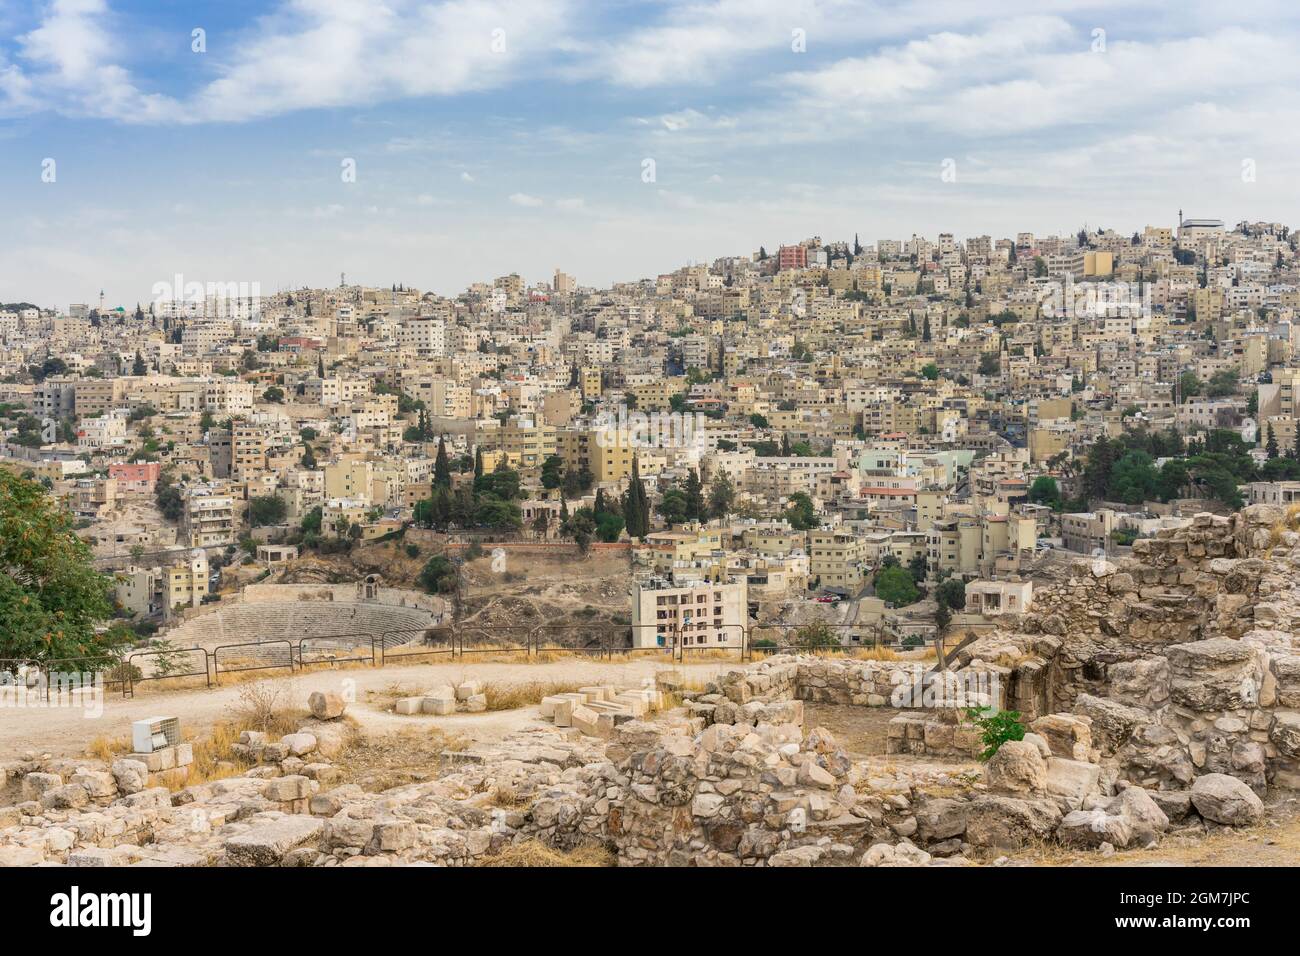 AMMAN, JORDANIE - 15 OCTOBRE 2018: Paysage urbain Amman centre-ville au crépuscule, vue panoramique depuis la colline de la citadelle. Capitale de la Jordanie. Banque D'Images